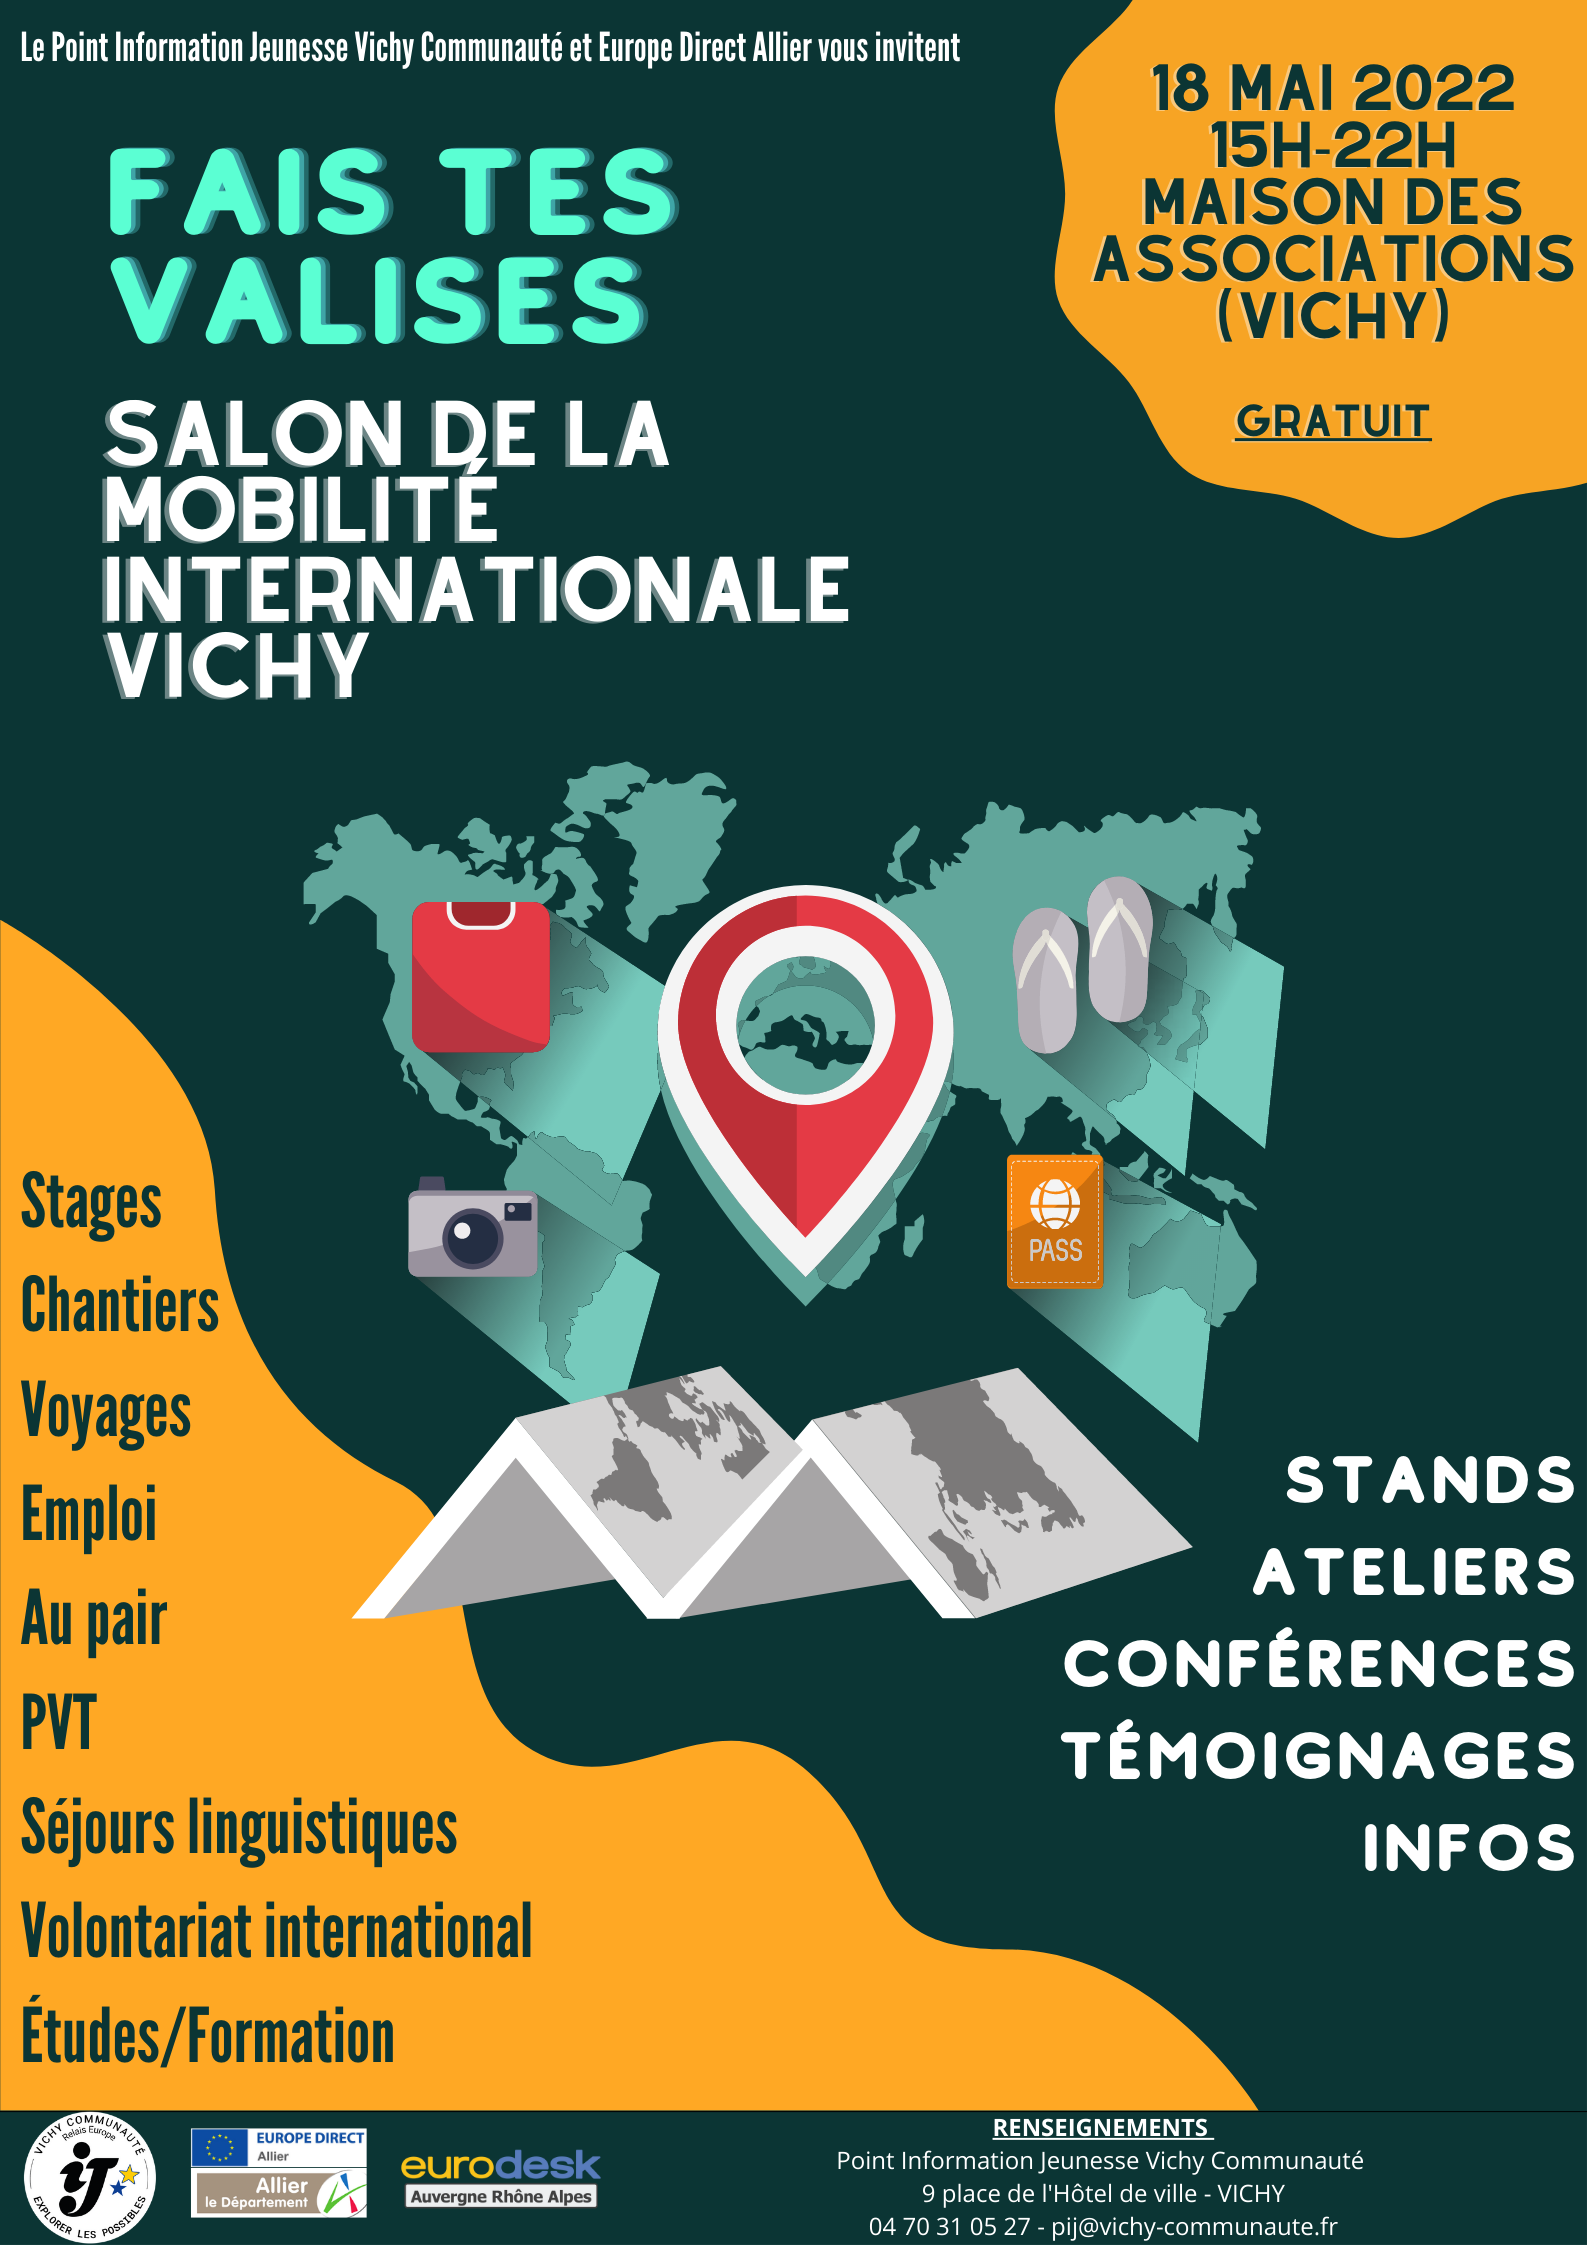 [SUR PLACE] Fais tes valises - Salon de la mobilité internationale @ Maison des Associations | Vichy | Auvergne-Rhône-Alpes | France